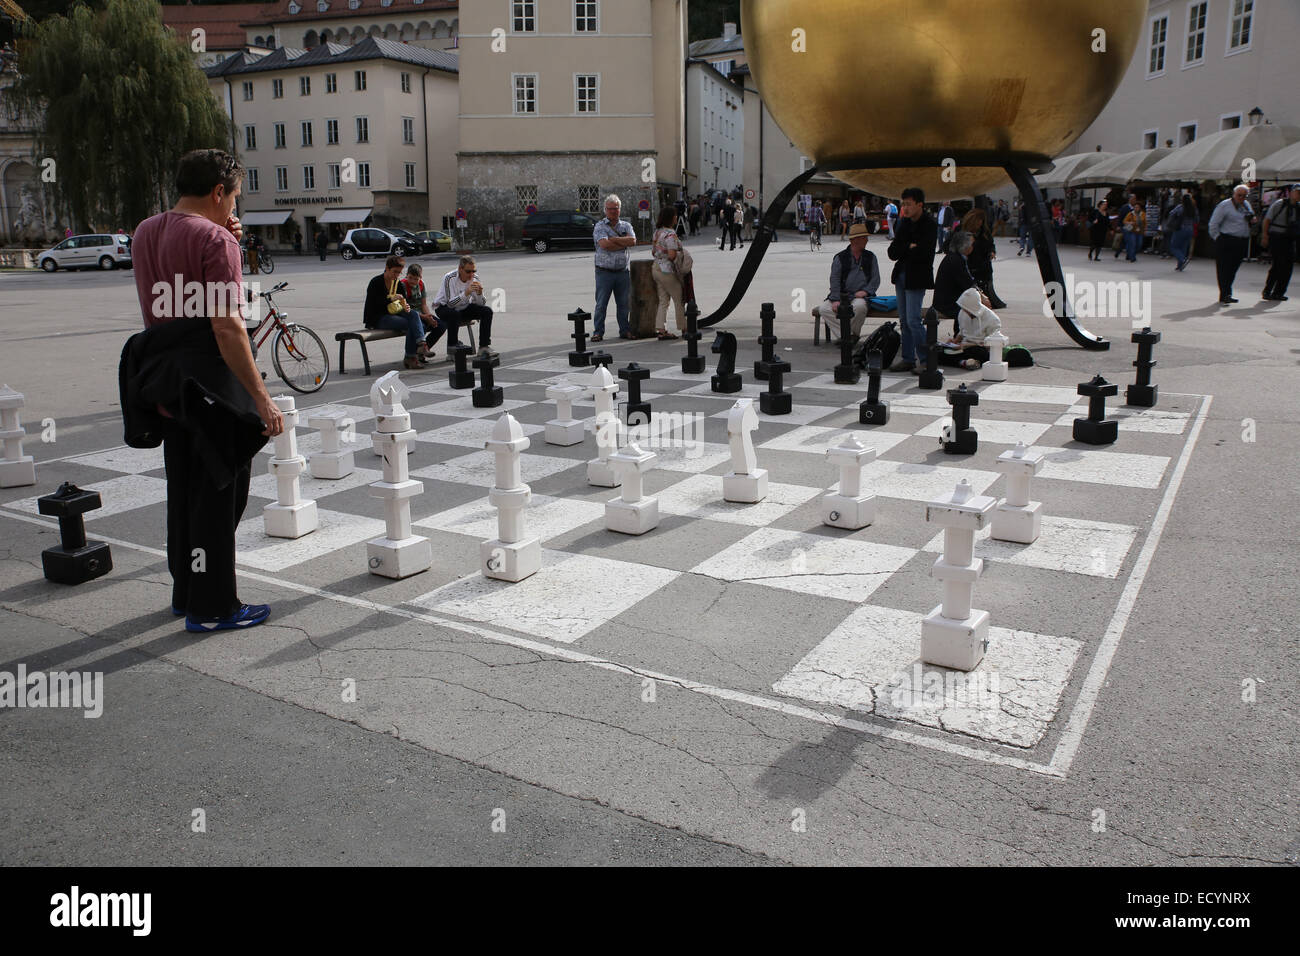 Salzburg Kapitelplatz square chess board Stock Photo